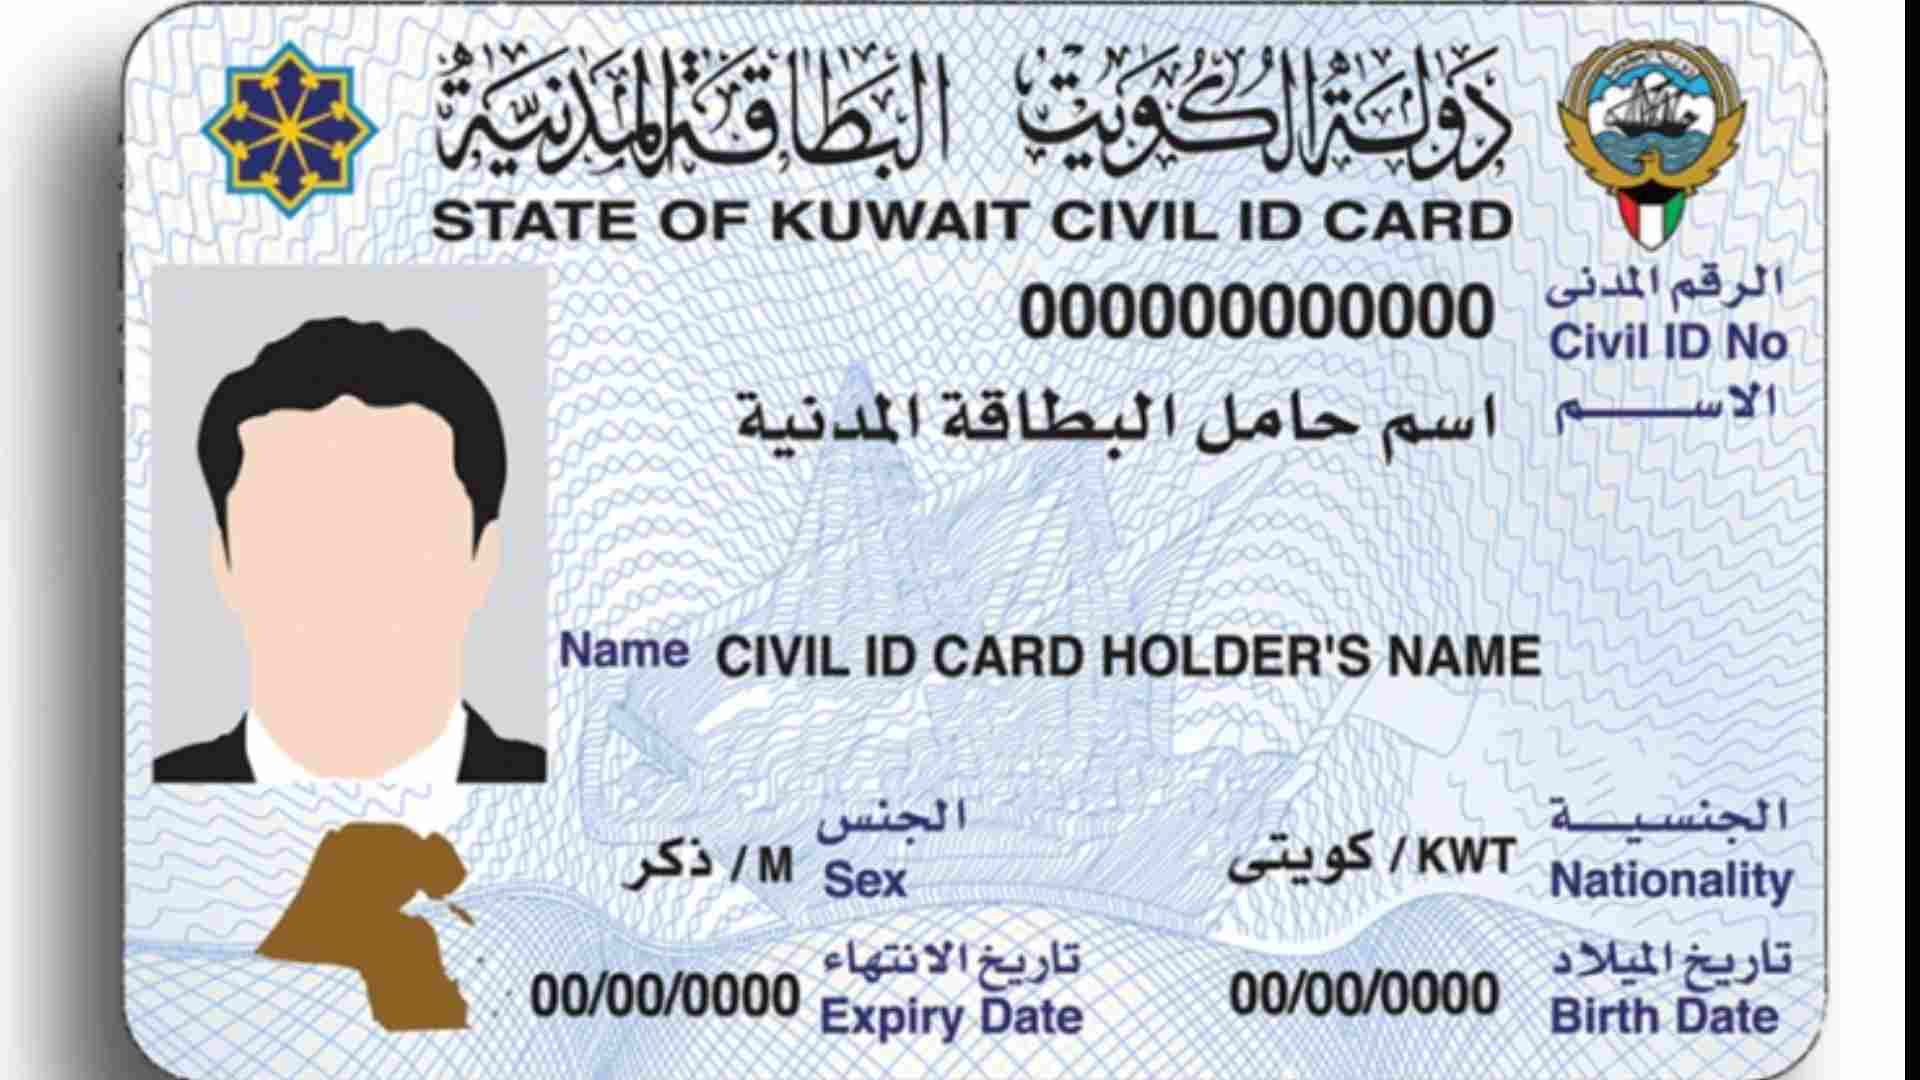 Kuwait Civil ID validity